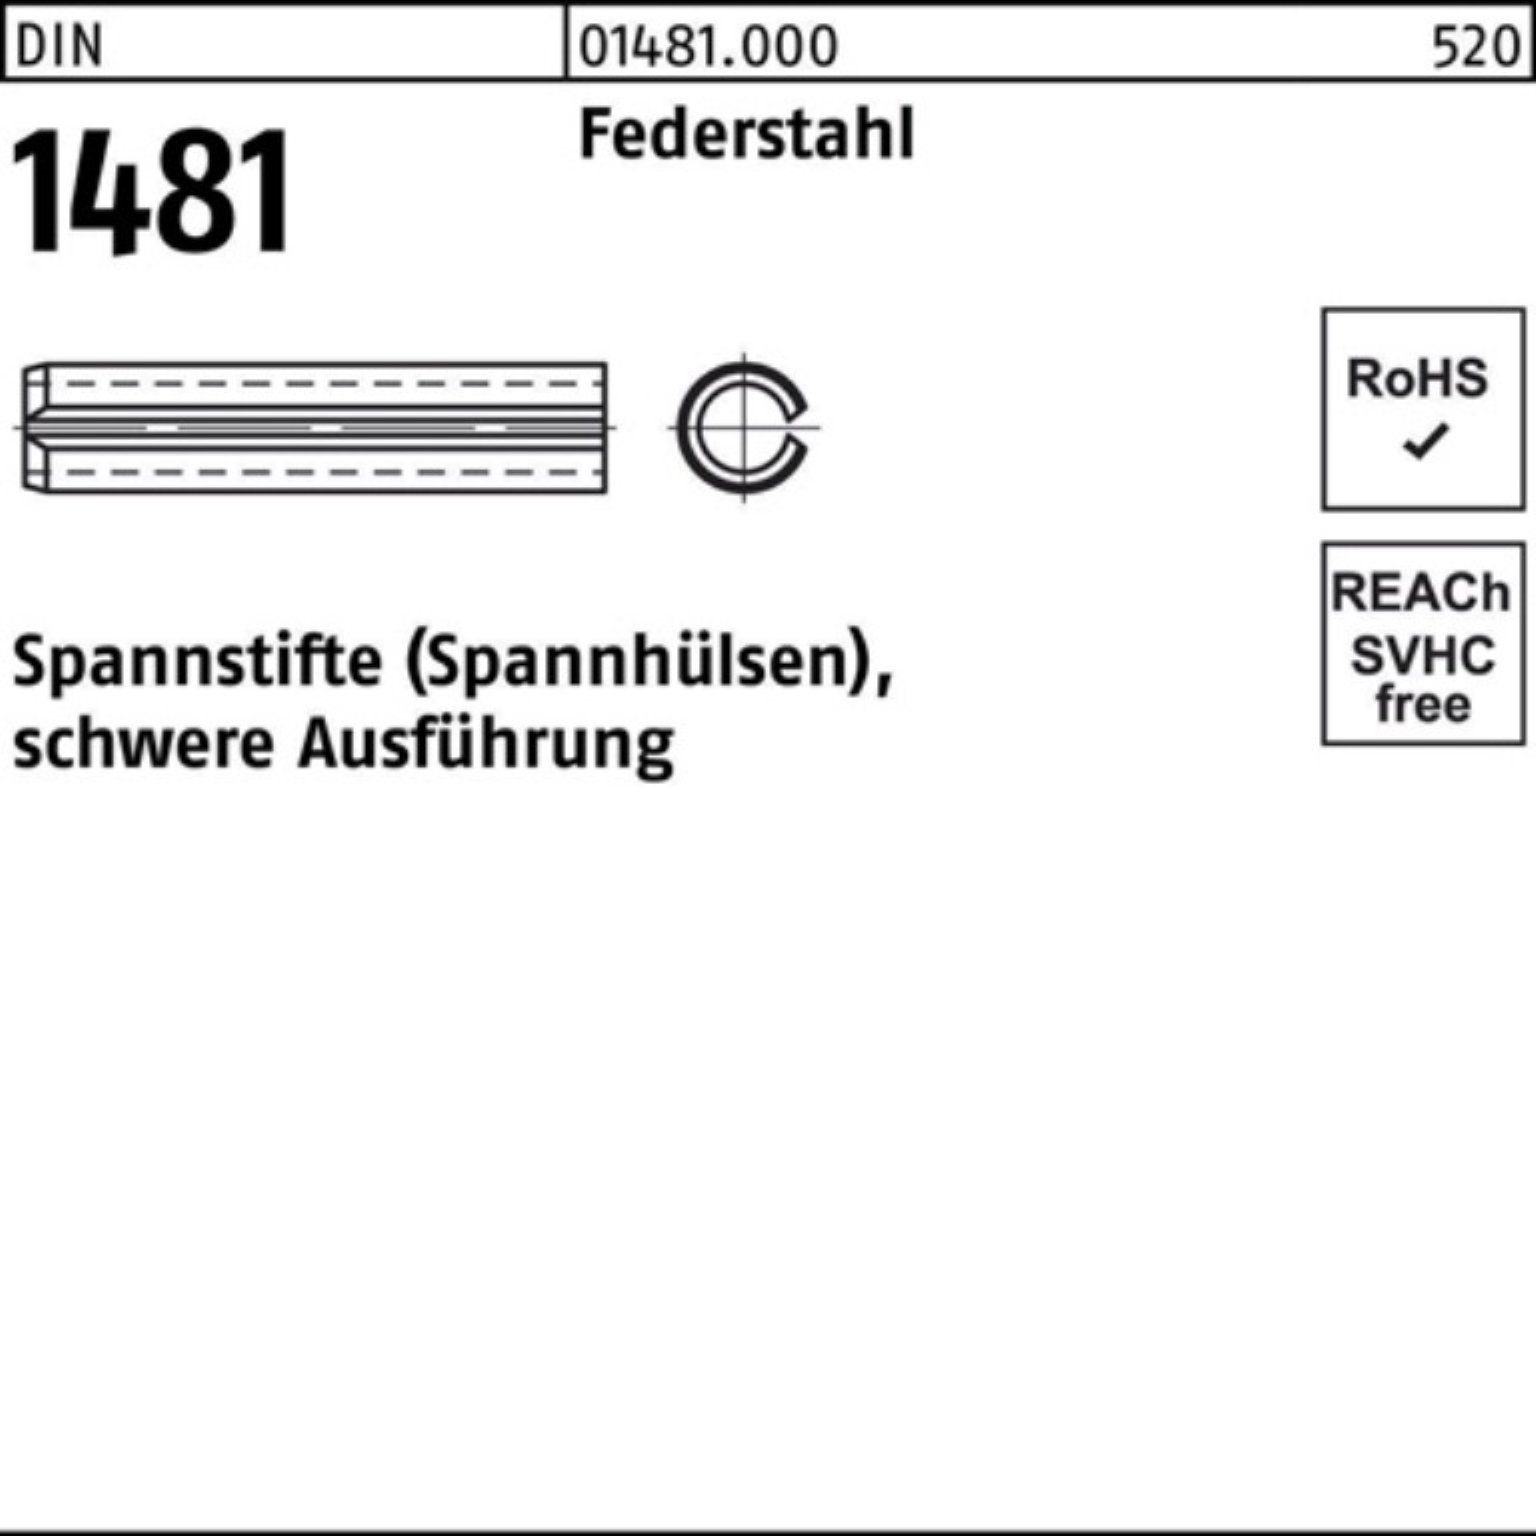 Reyher Spannstift 100er Pack Spannstift DIN 1481 14x 160 Federstahl schwere Ausführung